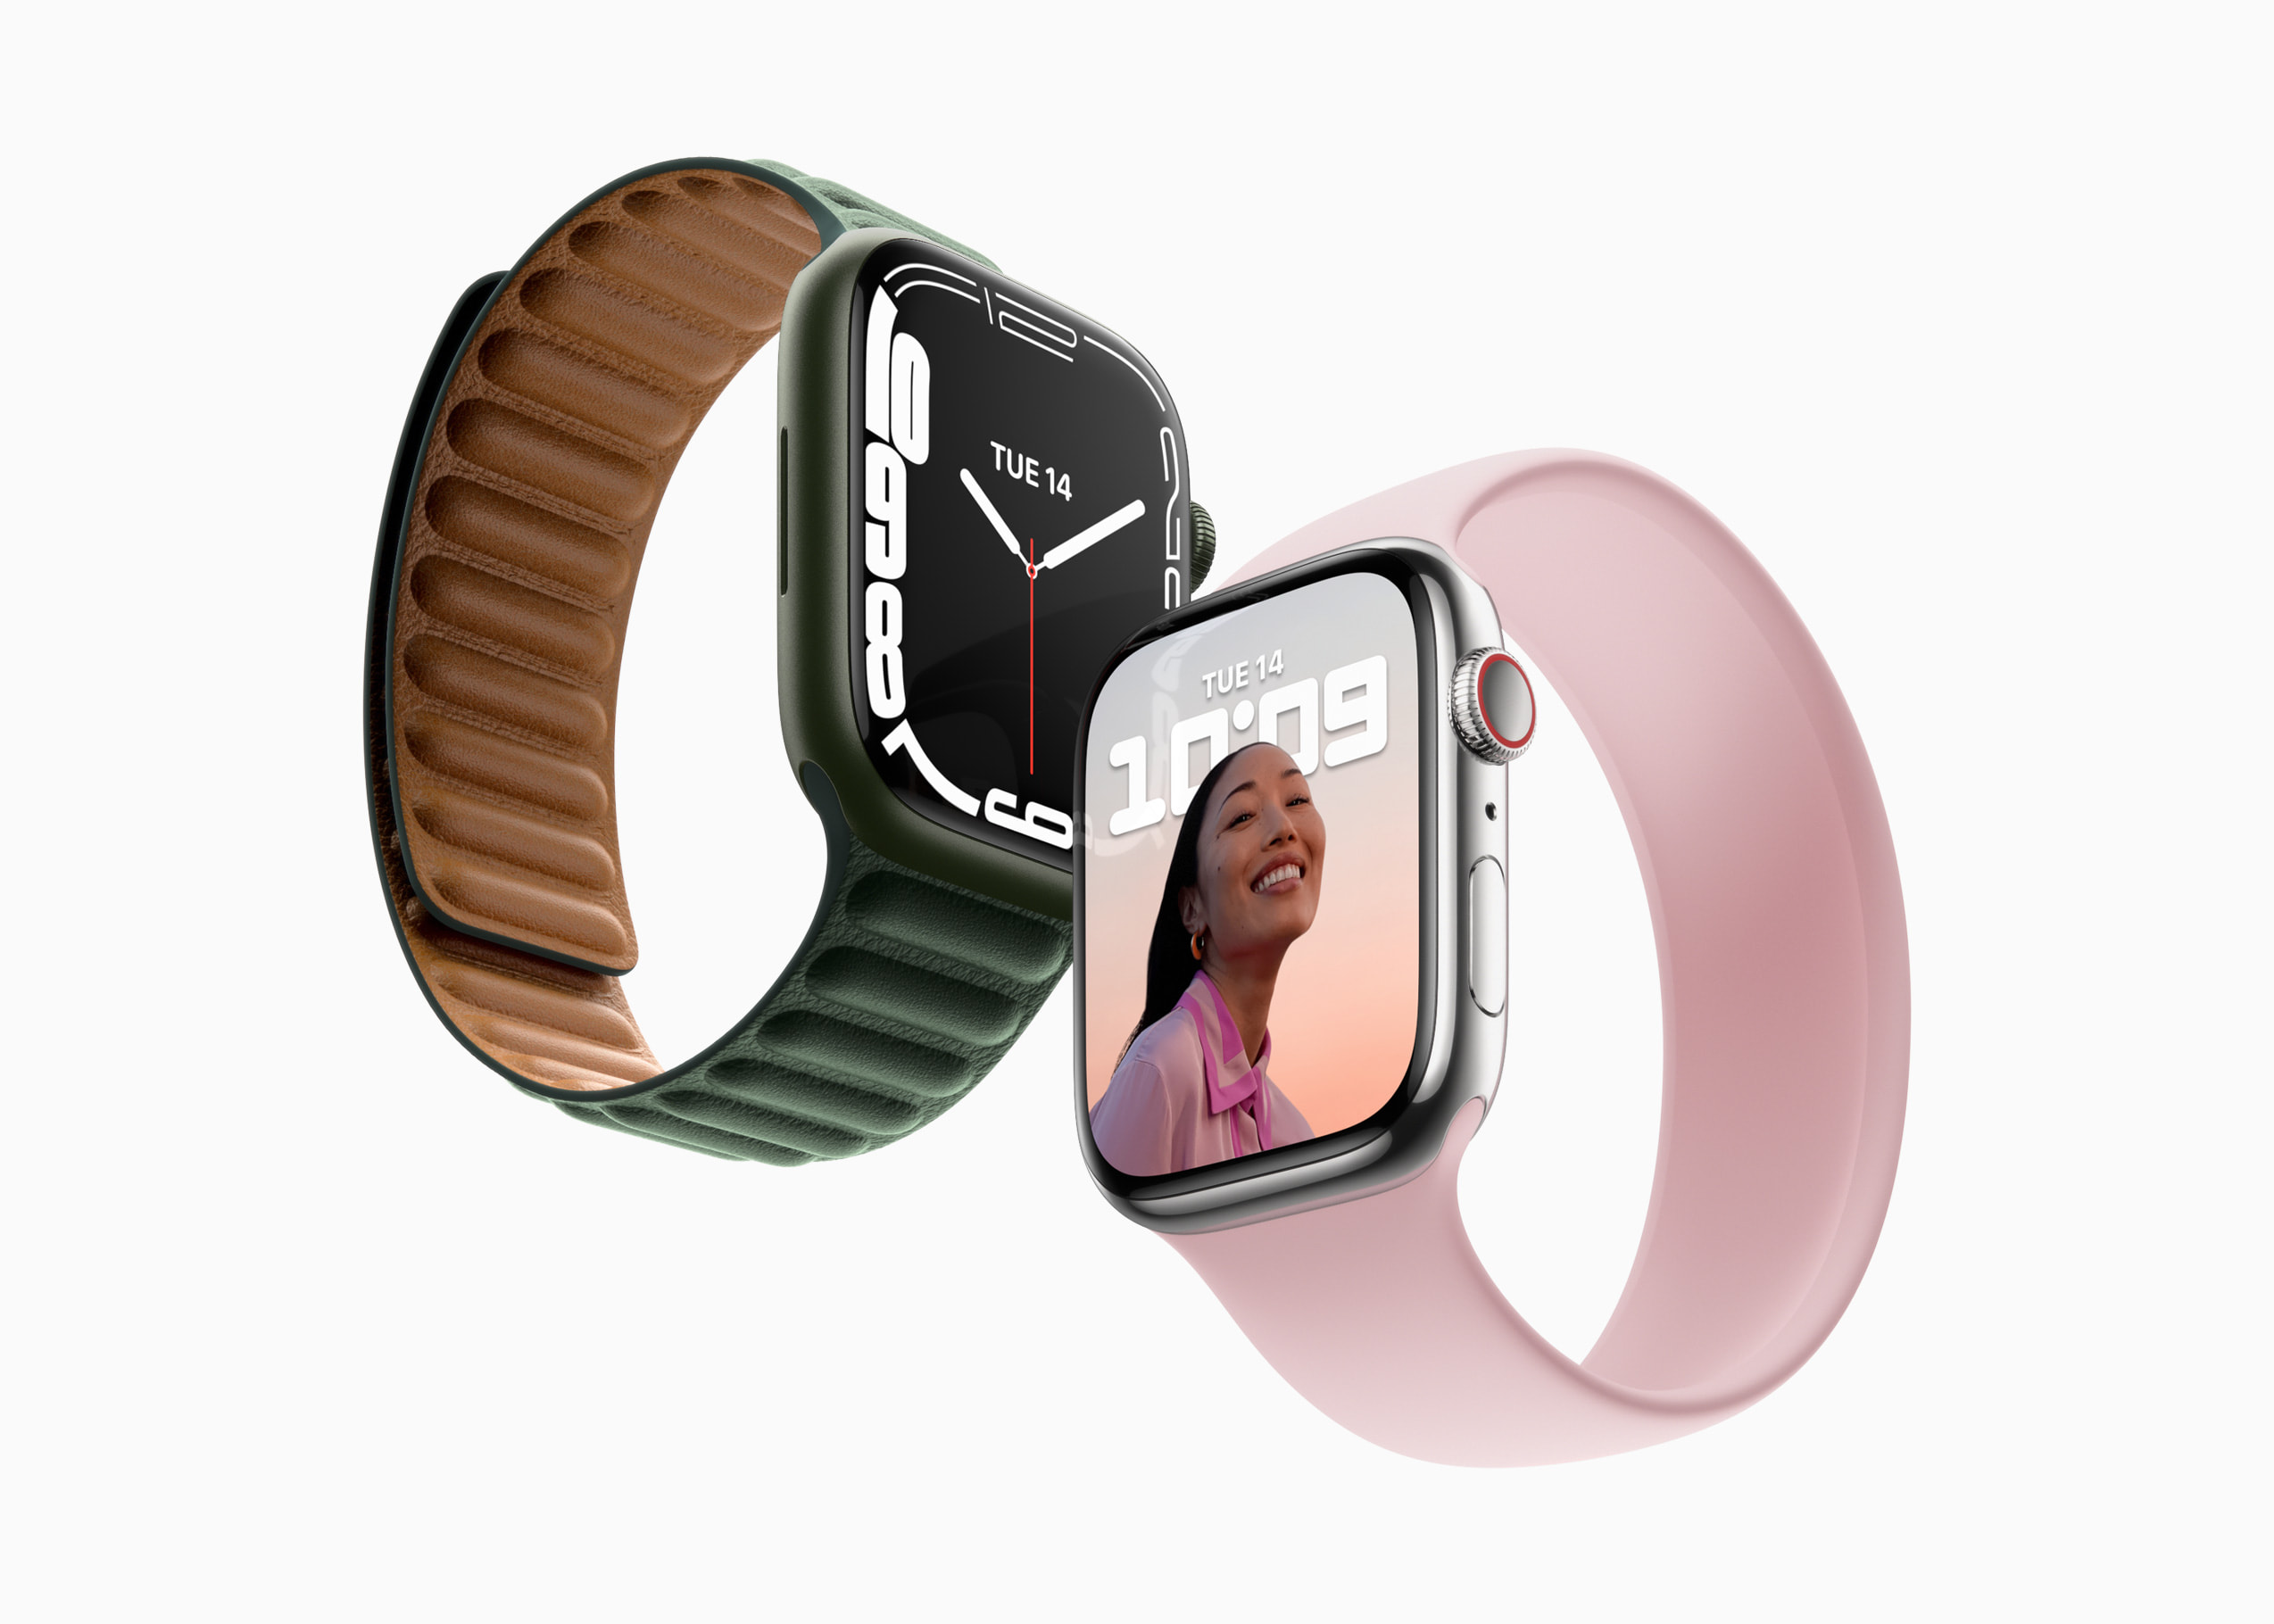 Đồng hồ Apple Watch Series 7: Hãy trải nghiệm công nghệ đỉnh cao của Apple Watch Series 7 với thiết kế sang trọng, màn hình lớn và nhiều tính năng đa dạng. Từ việc đo nhịp tim, tính năng định vị GPS cho đến thông báo tin nhắn, tất cả đều có trong chiếc đồng hồ Apple Watch Series